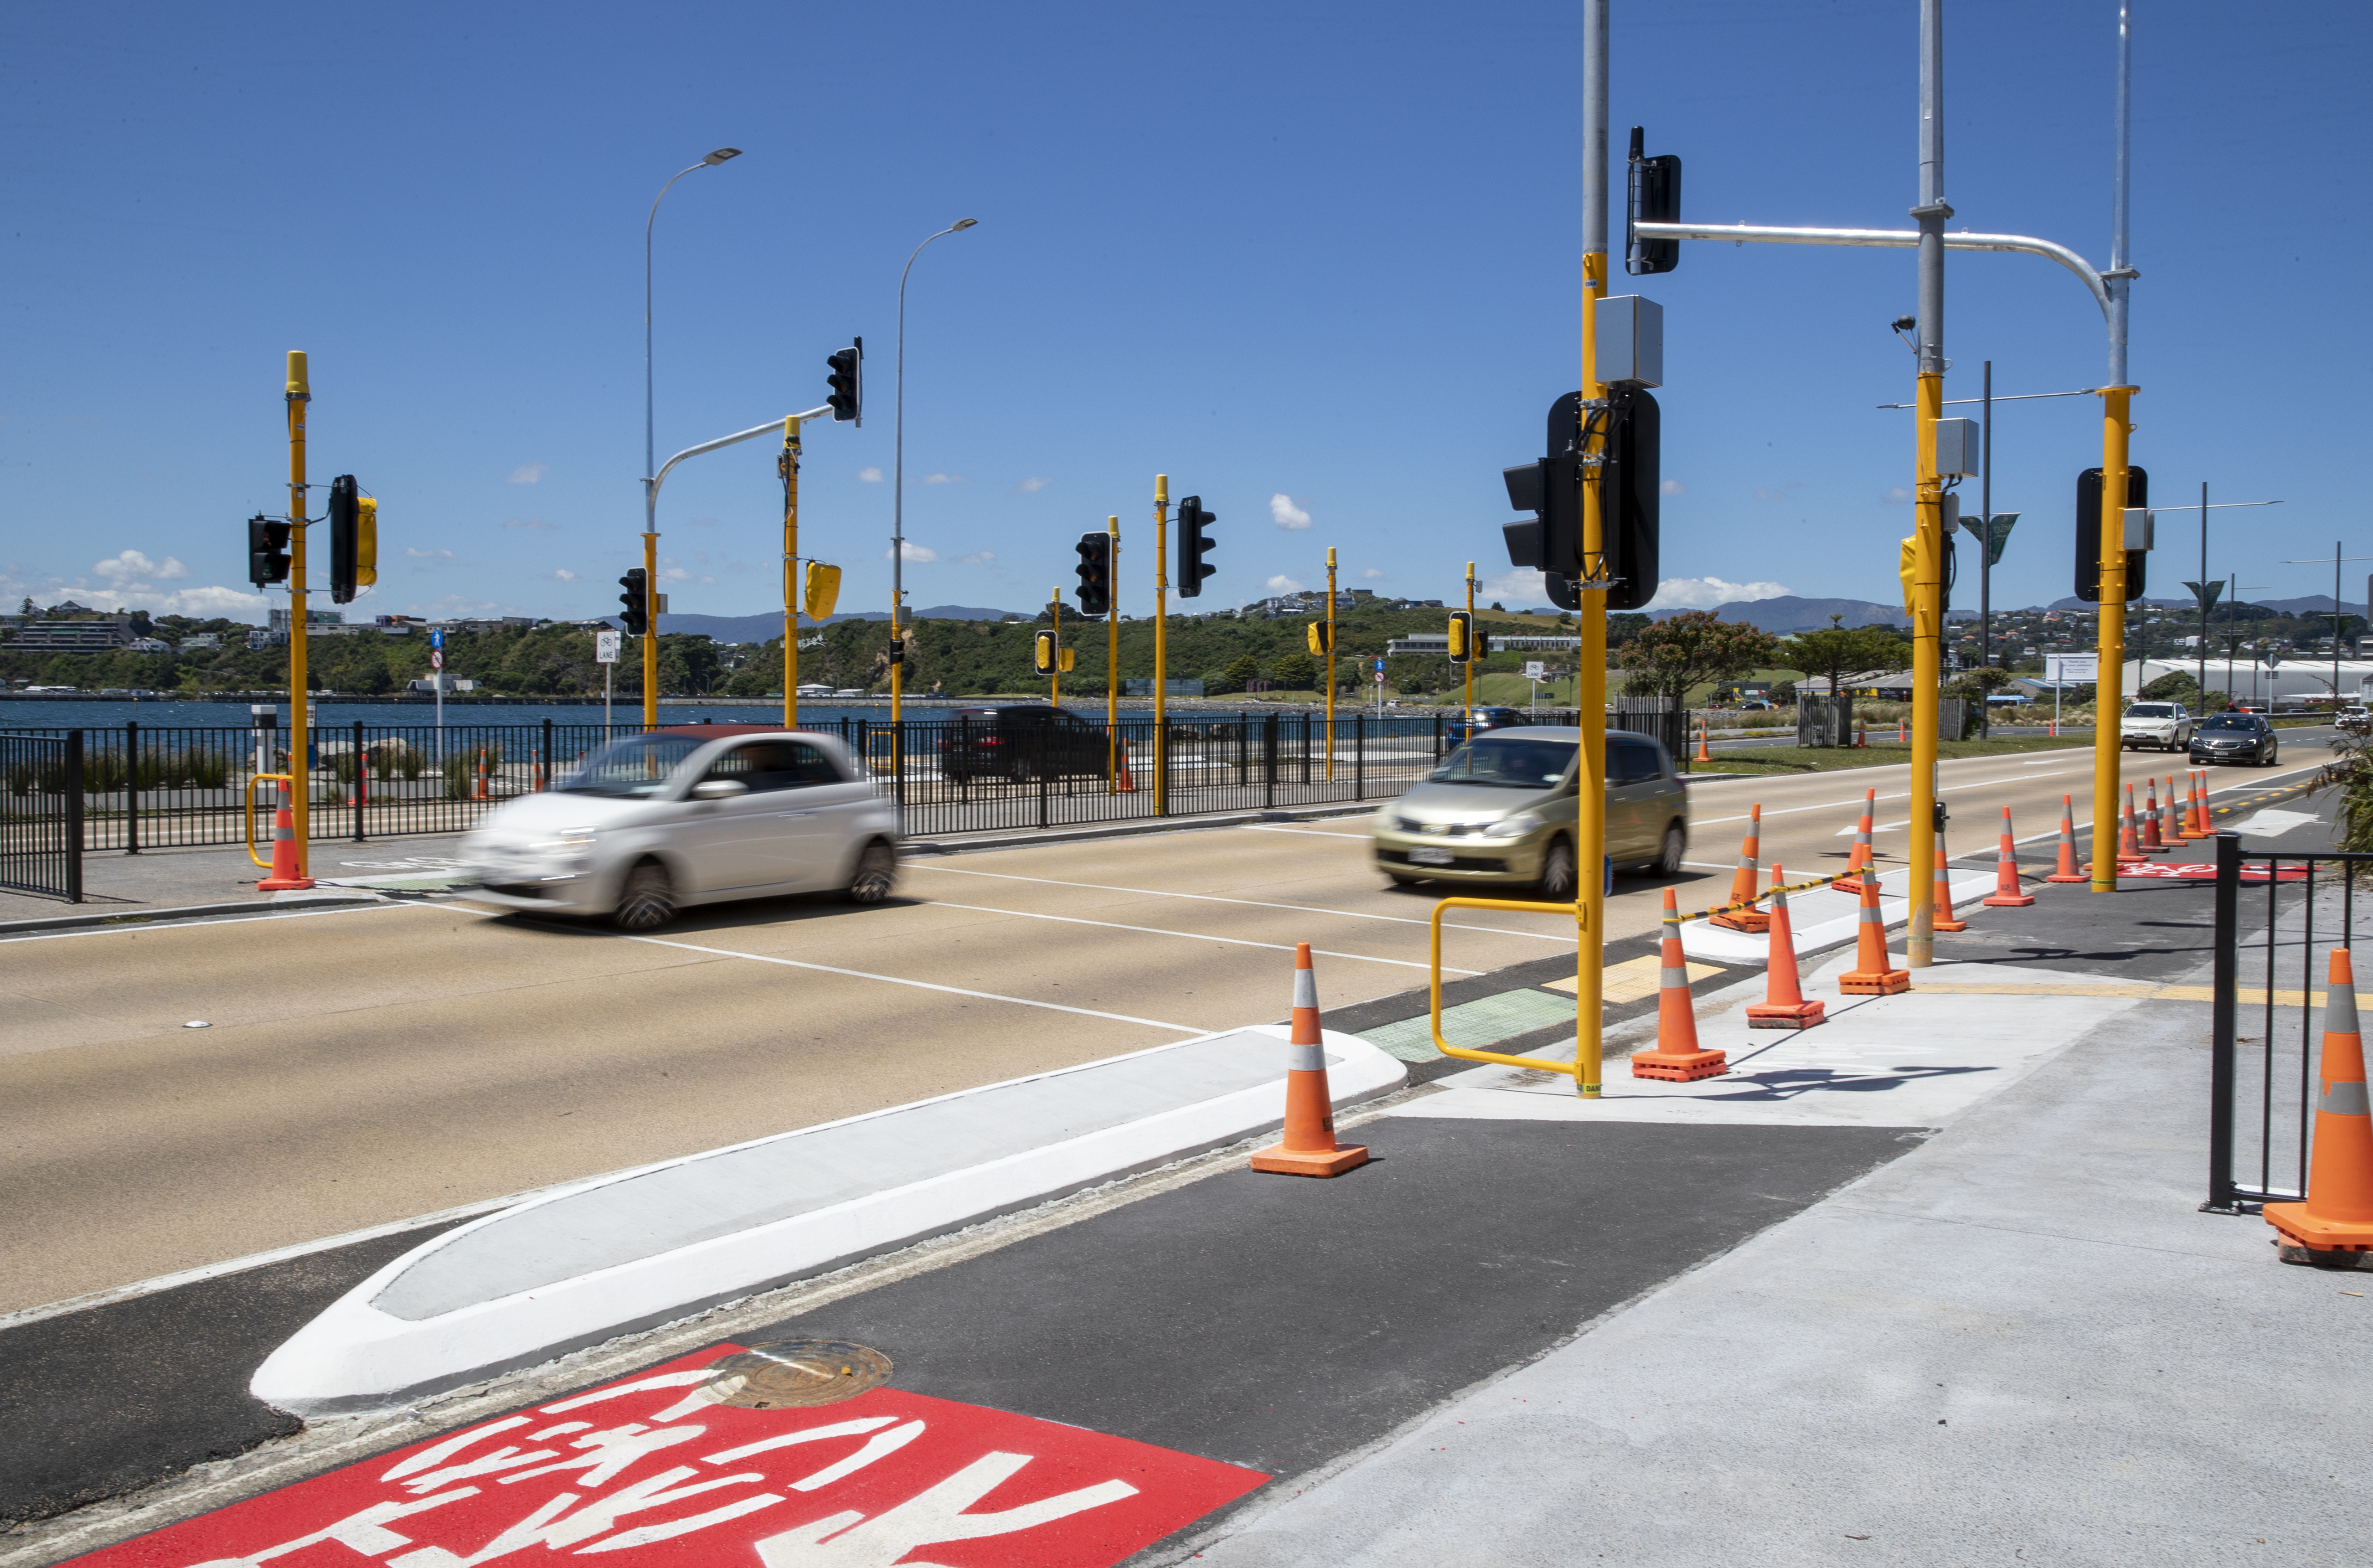 Pedestrian crossings - Kāpiti Coast District Council